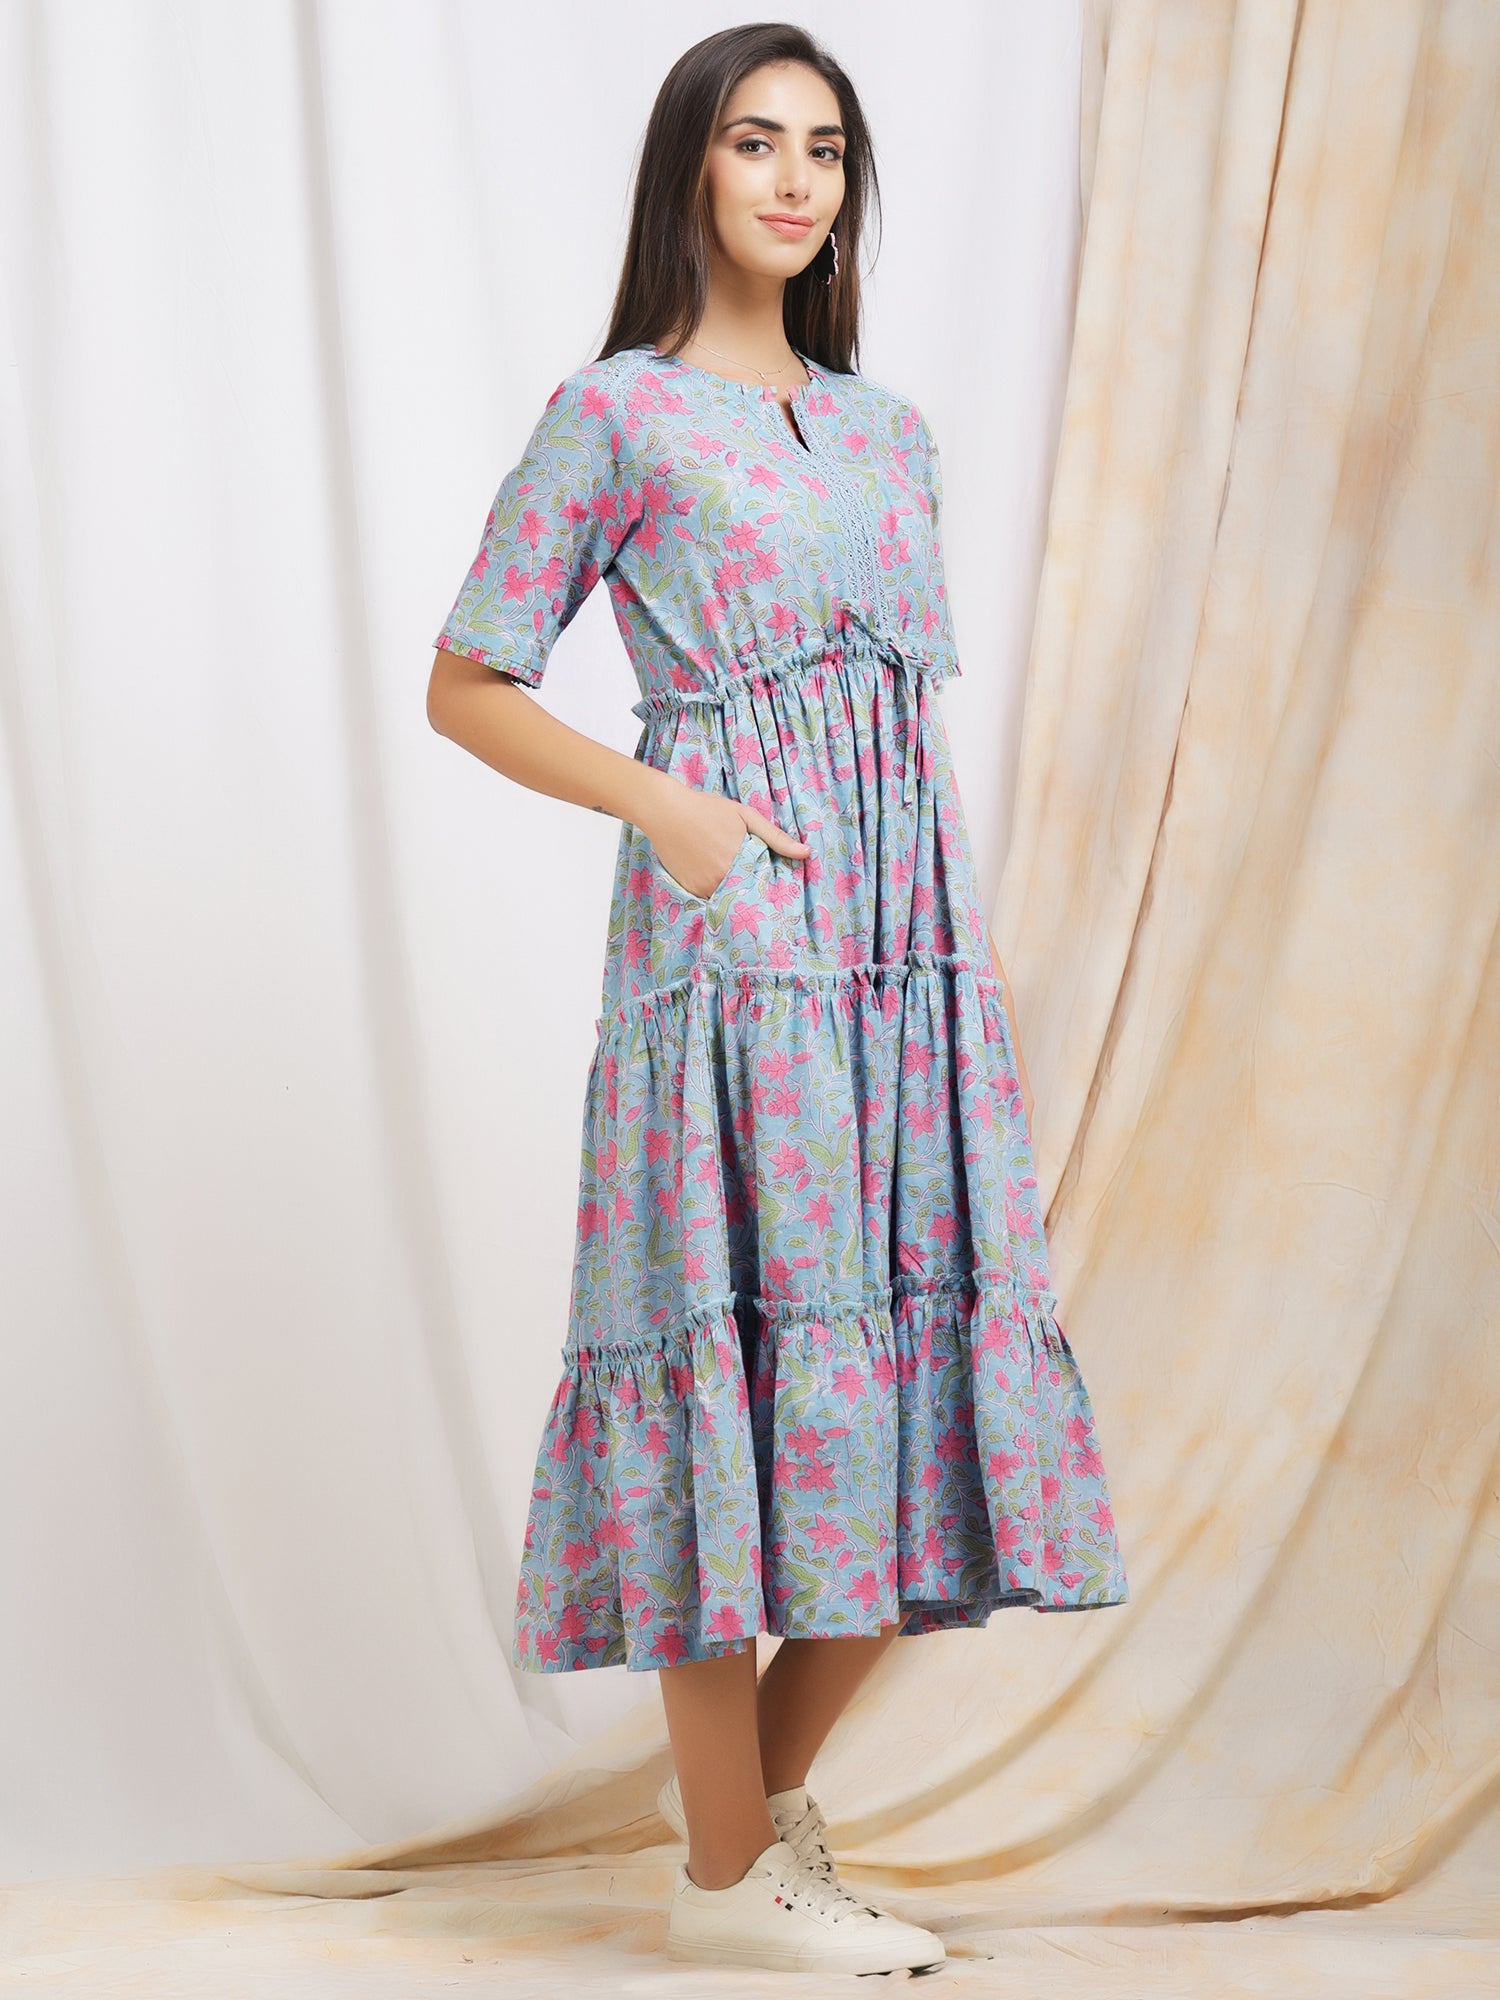 Tia Chevron 2 Tier Cotton Maxi Dress – Mouri